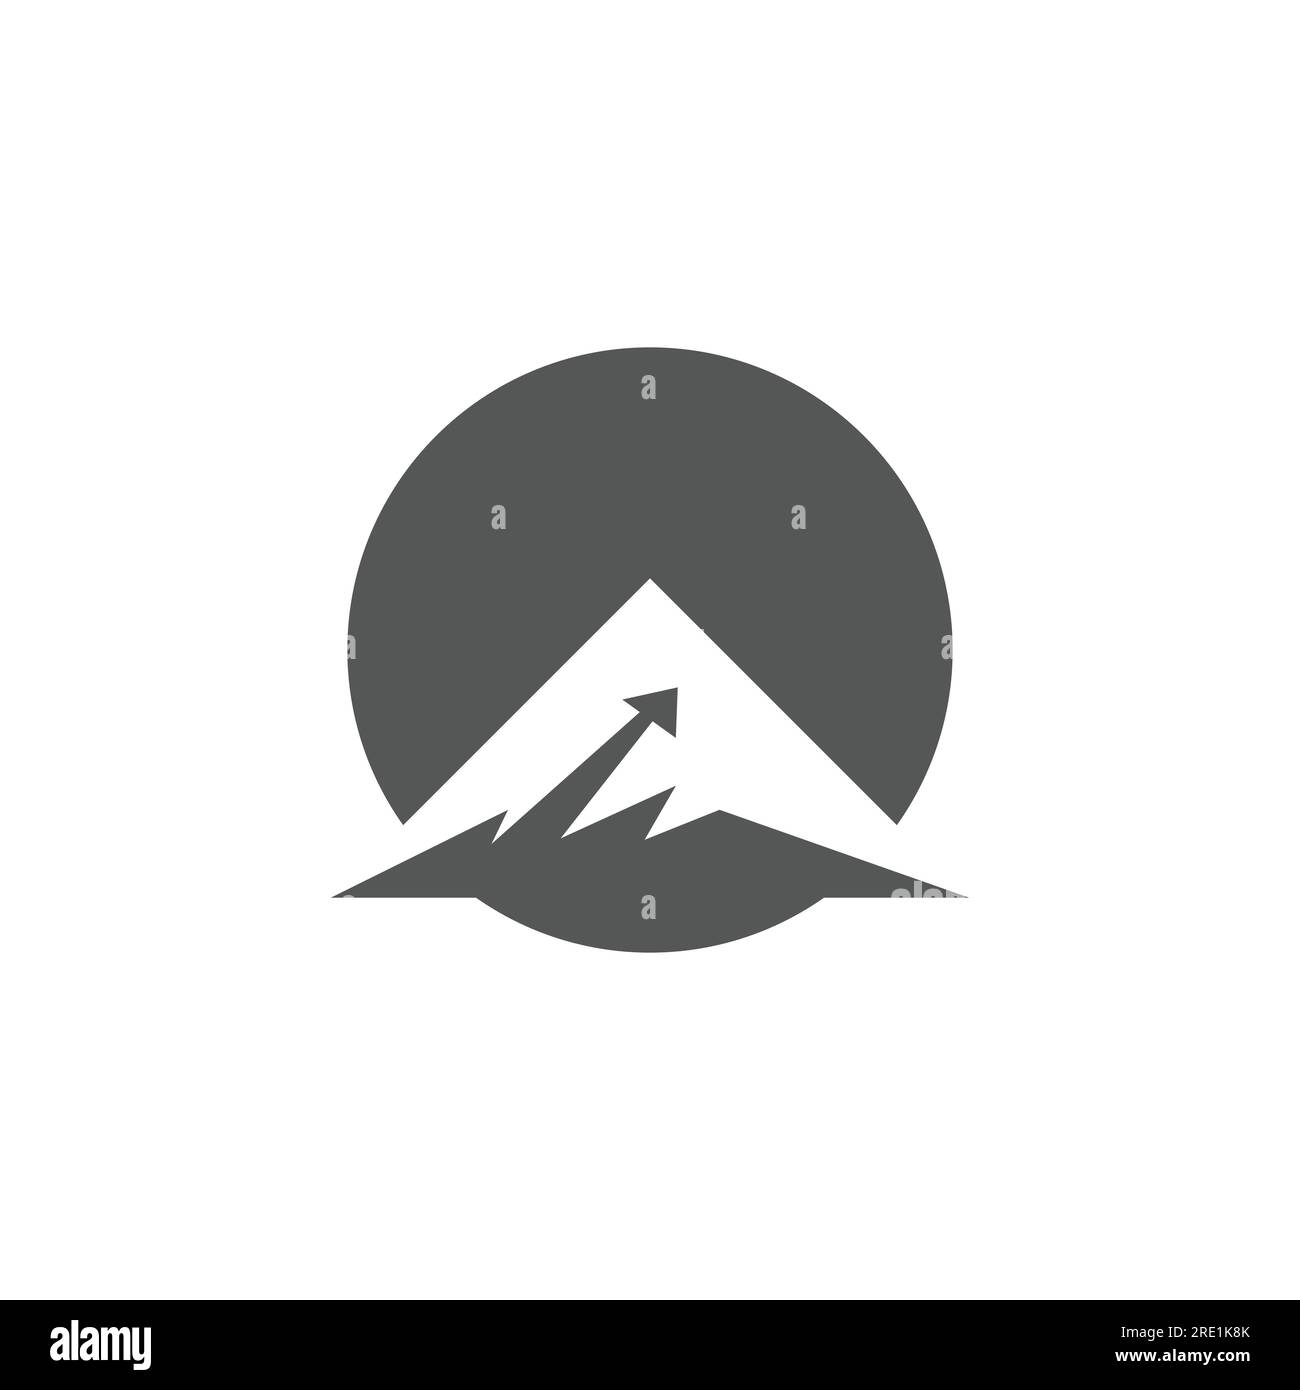 Vektorbild des STEP-Logos der Bergfinanzierung. Logo von Mountain & Marketing Statistics Arrow für Unternehmensfinanzen Stock Vektor